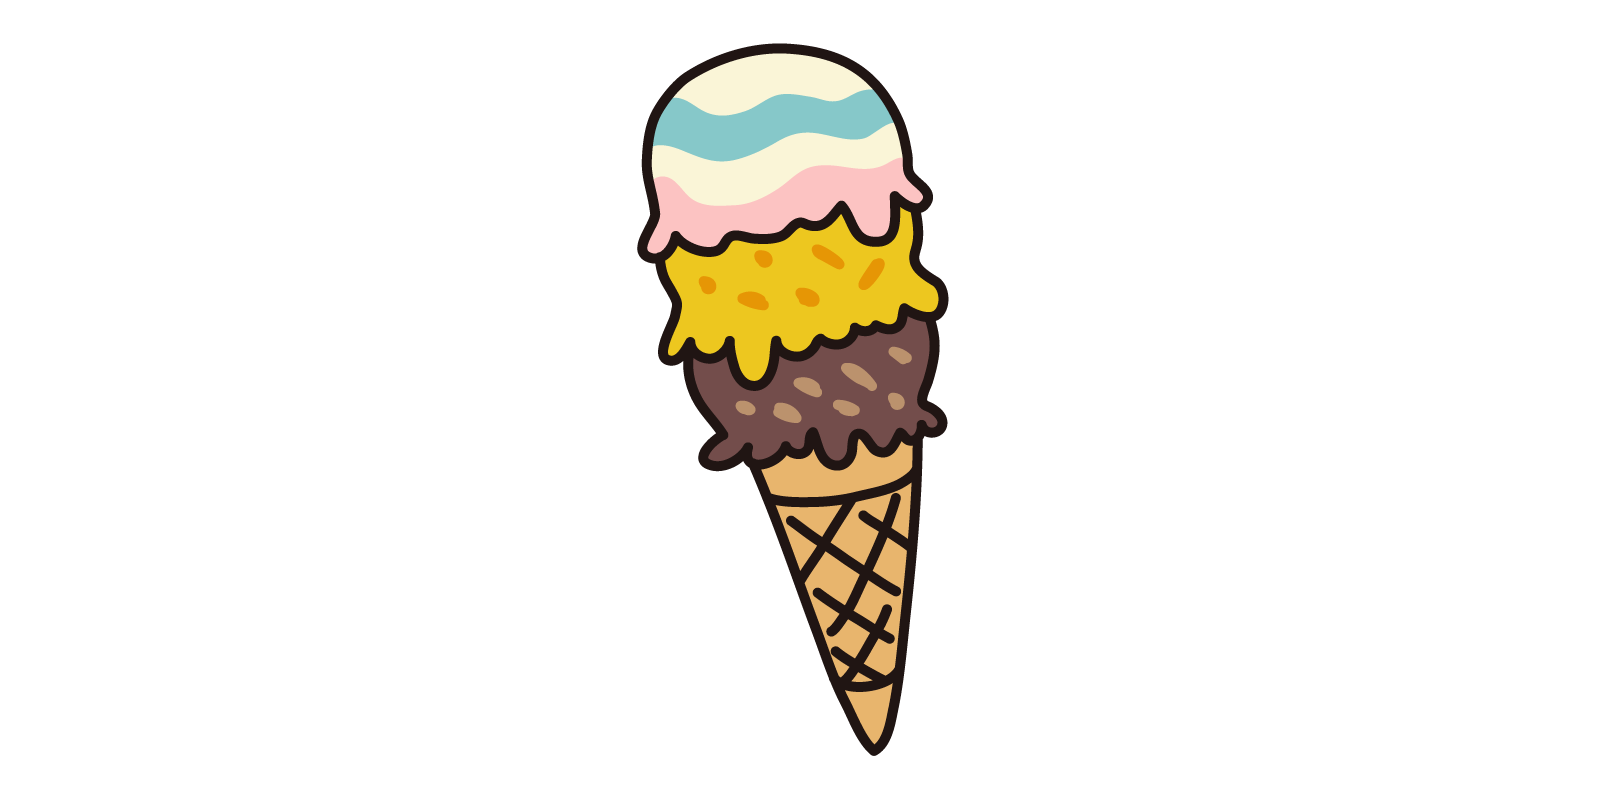 アイスクリーム 三段 無料で使える フリーイラストwebサイト かくすた